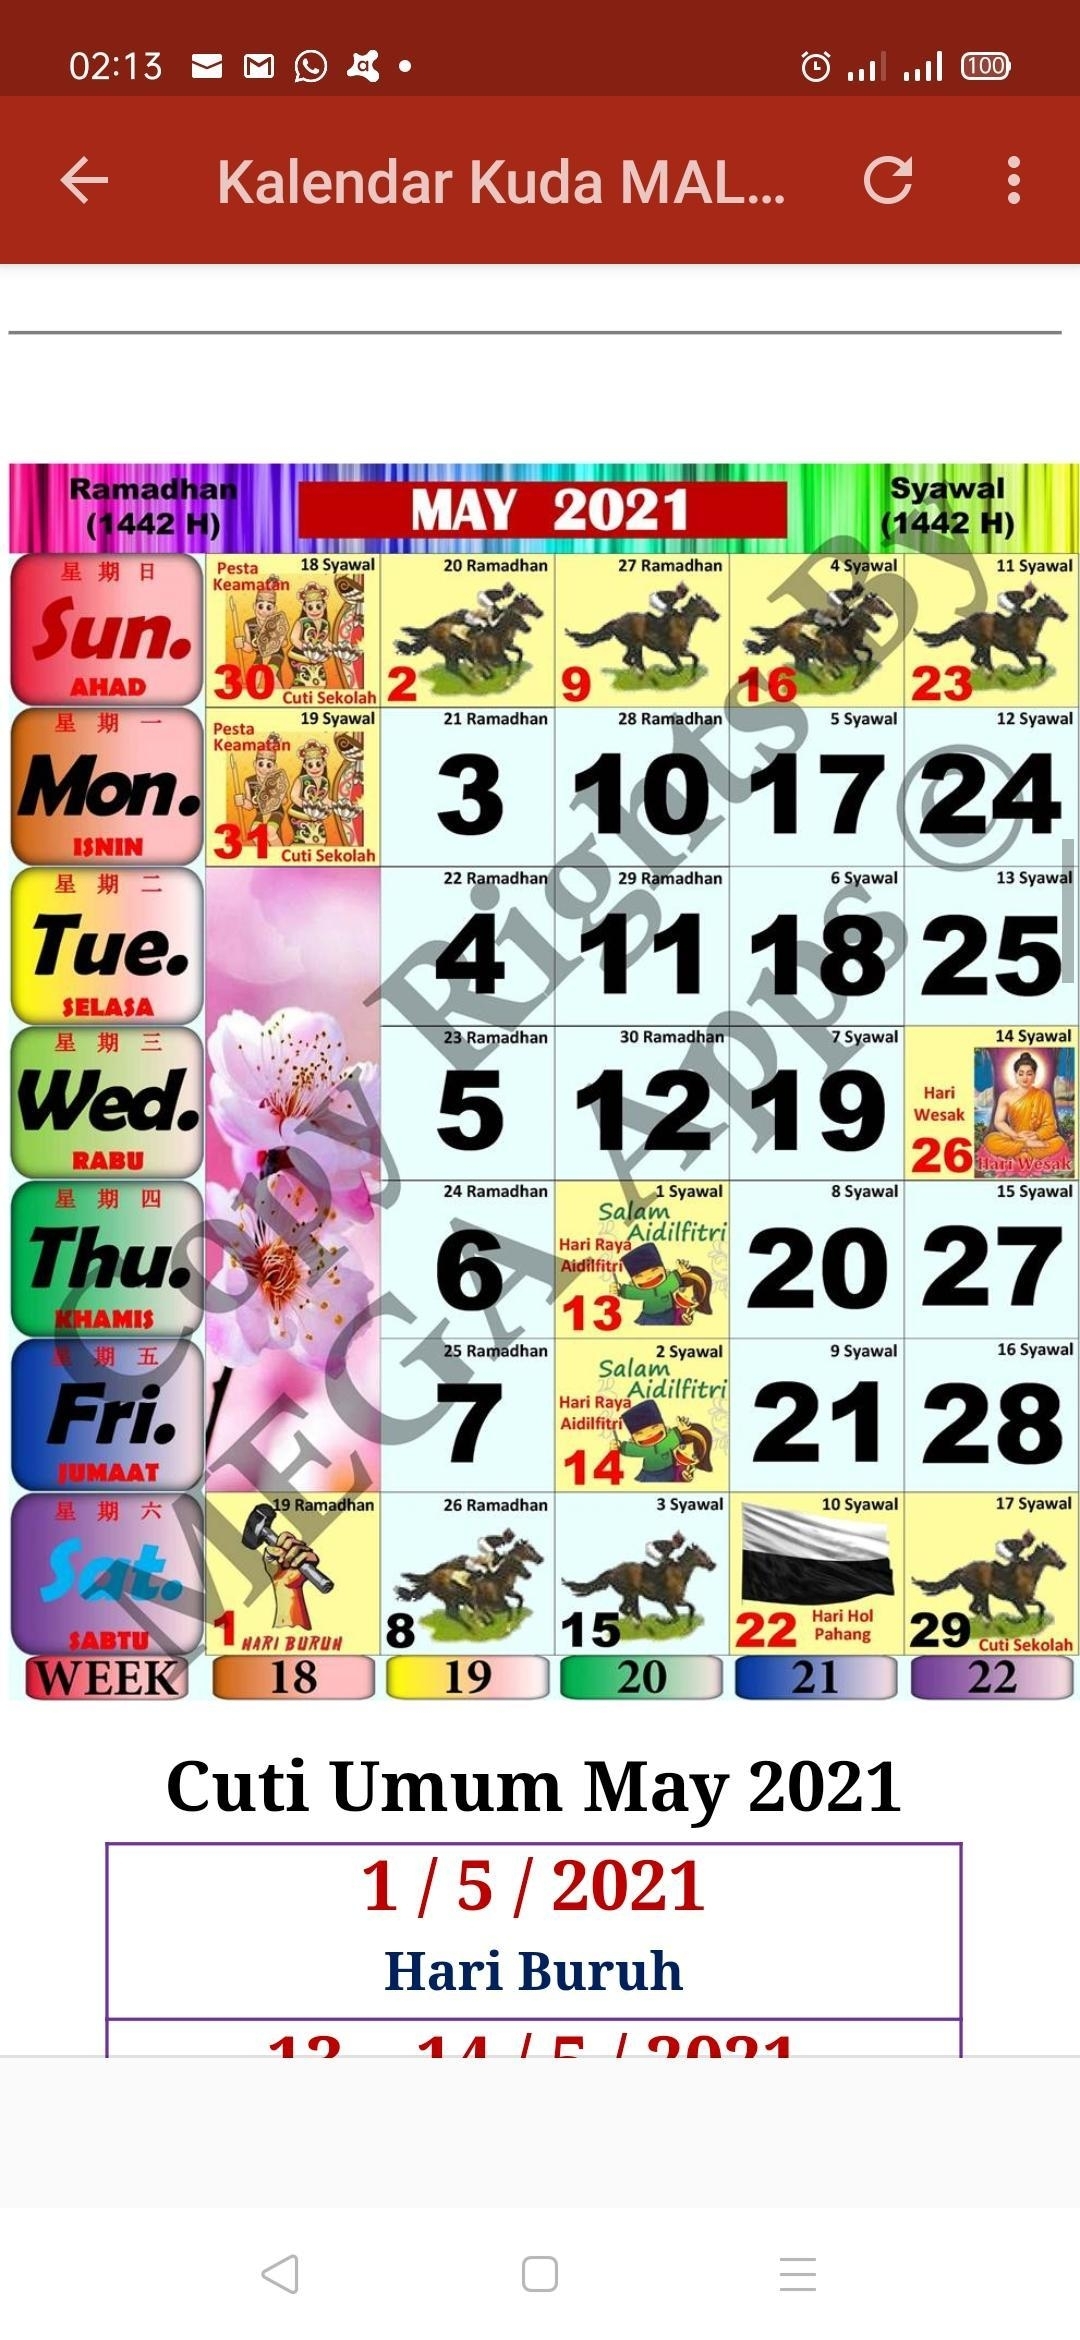 Kalendar Kuda Malaysia - 2021 For Android - Apk Download